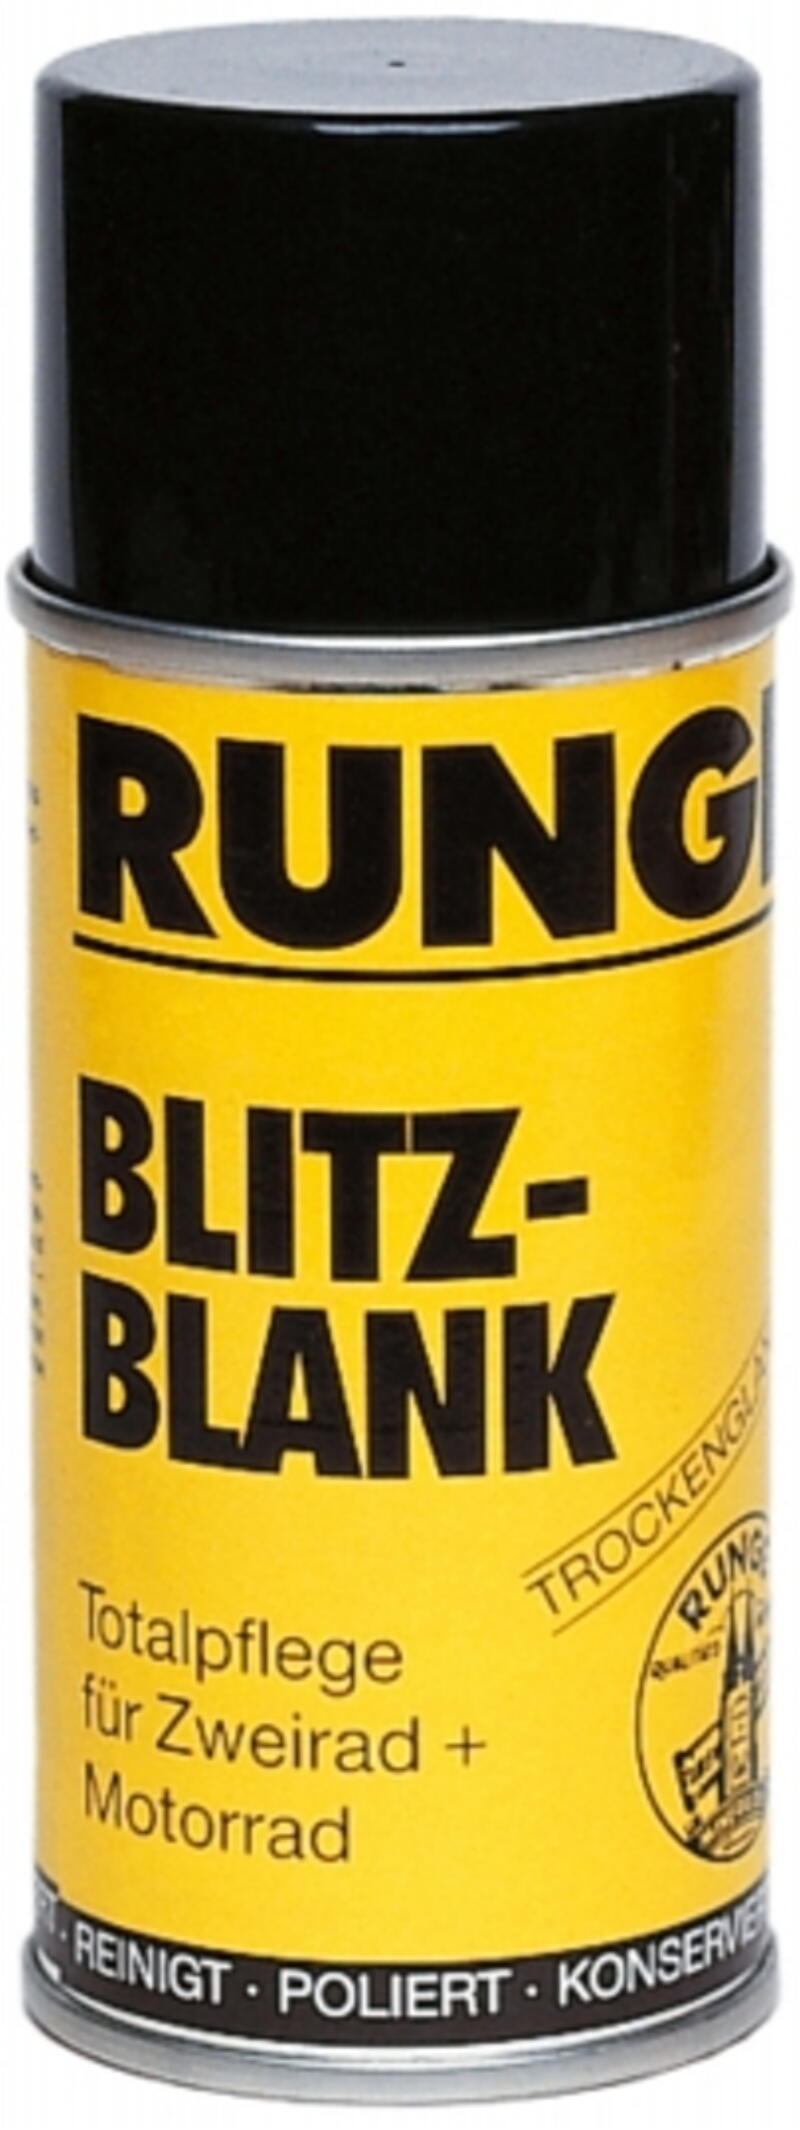 Runge Blitz Blank Spray 150ml Größe: 150 ml